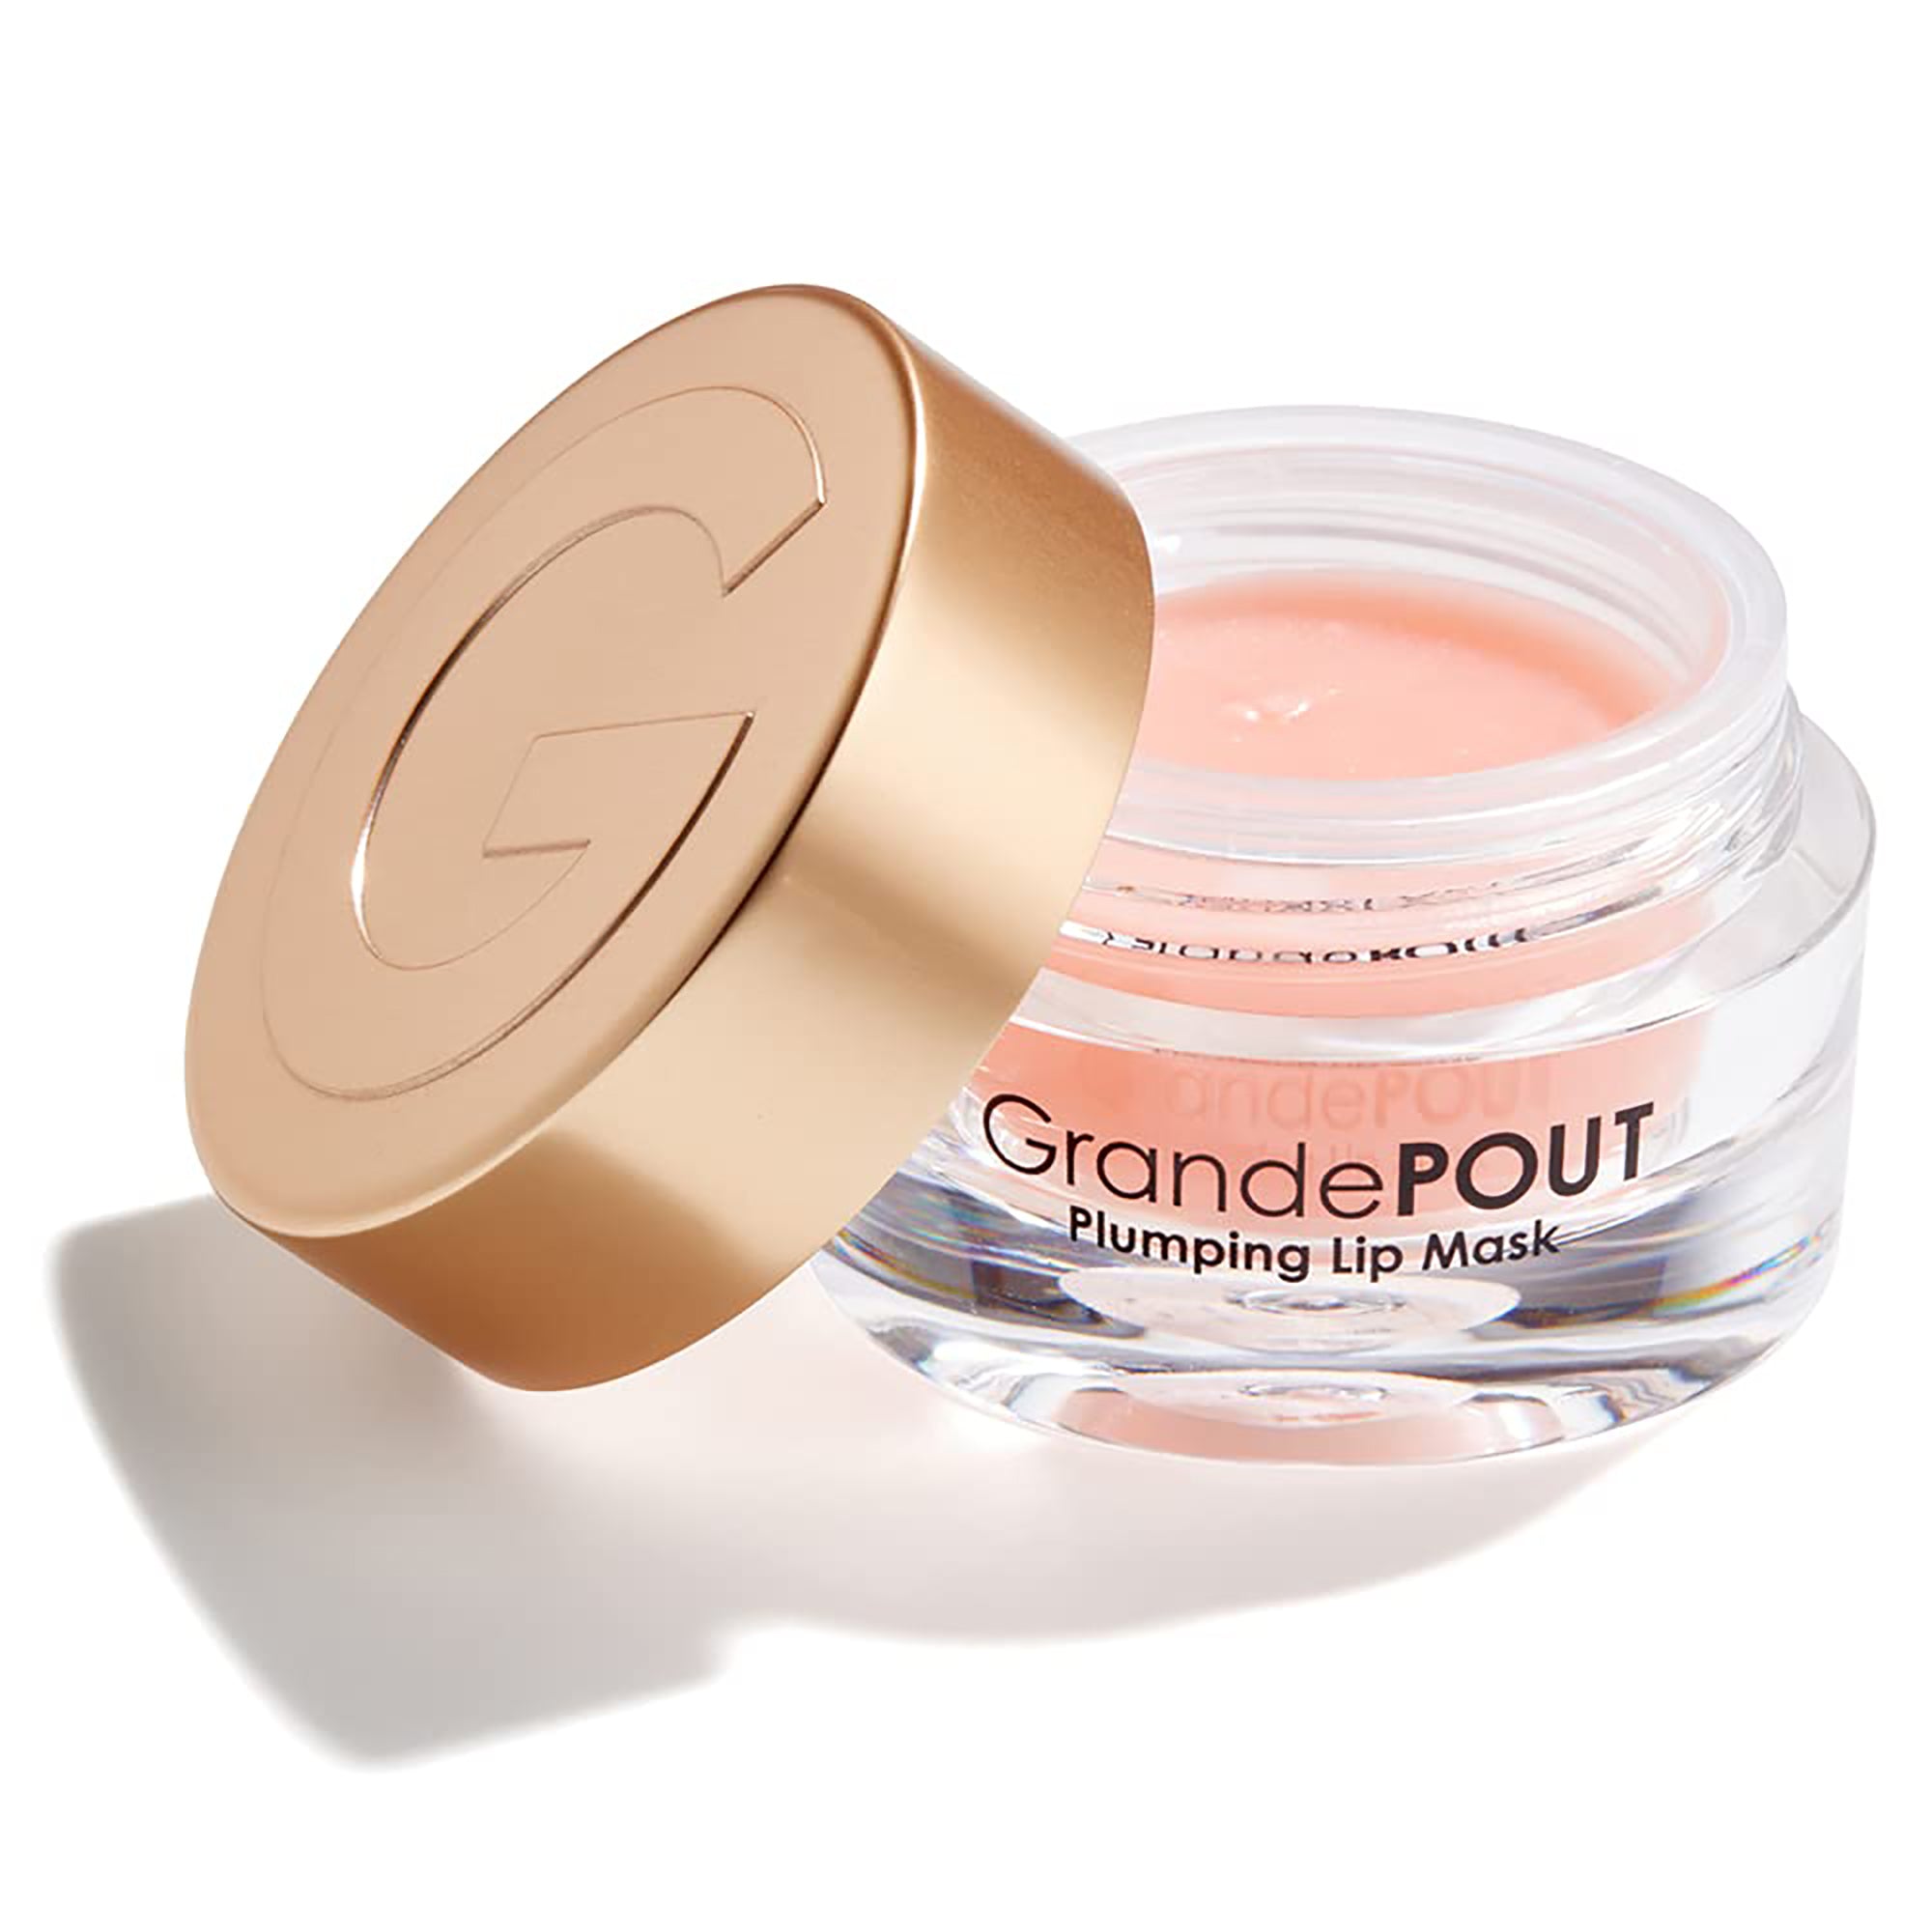 Grande GrandePOUT Plumping Lip Mask - Berry Mojito / Berry Mojito